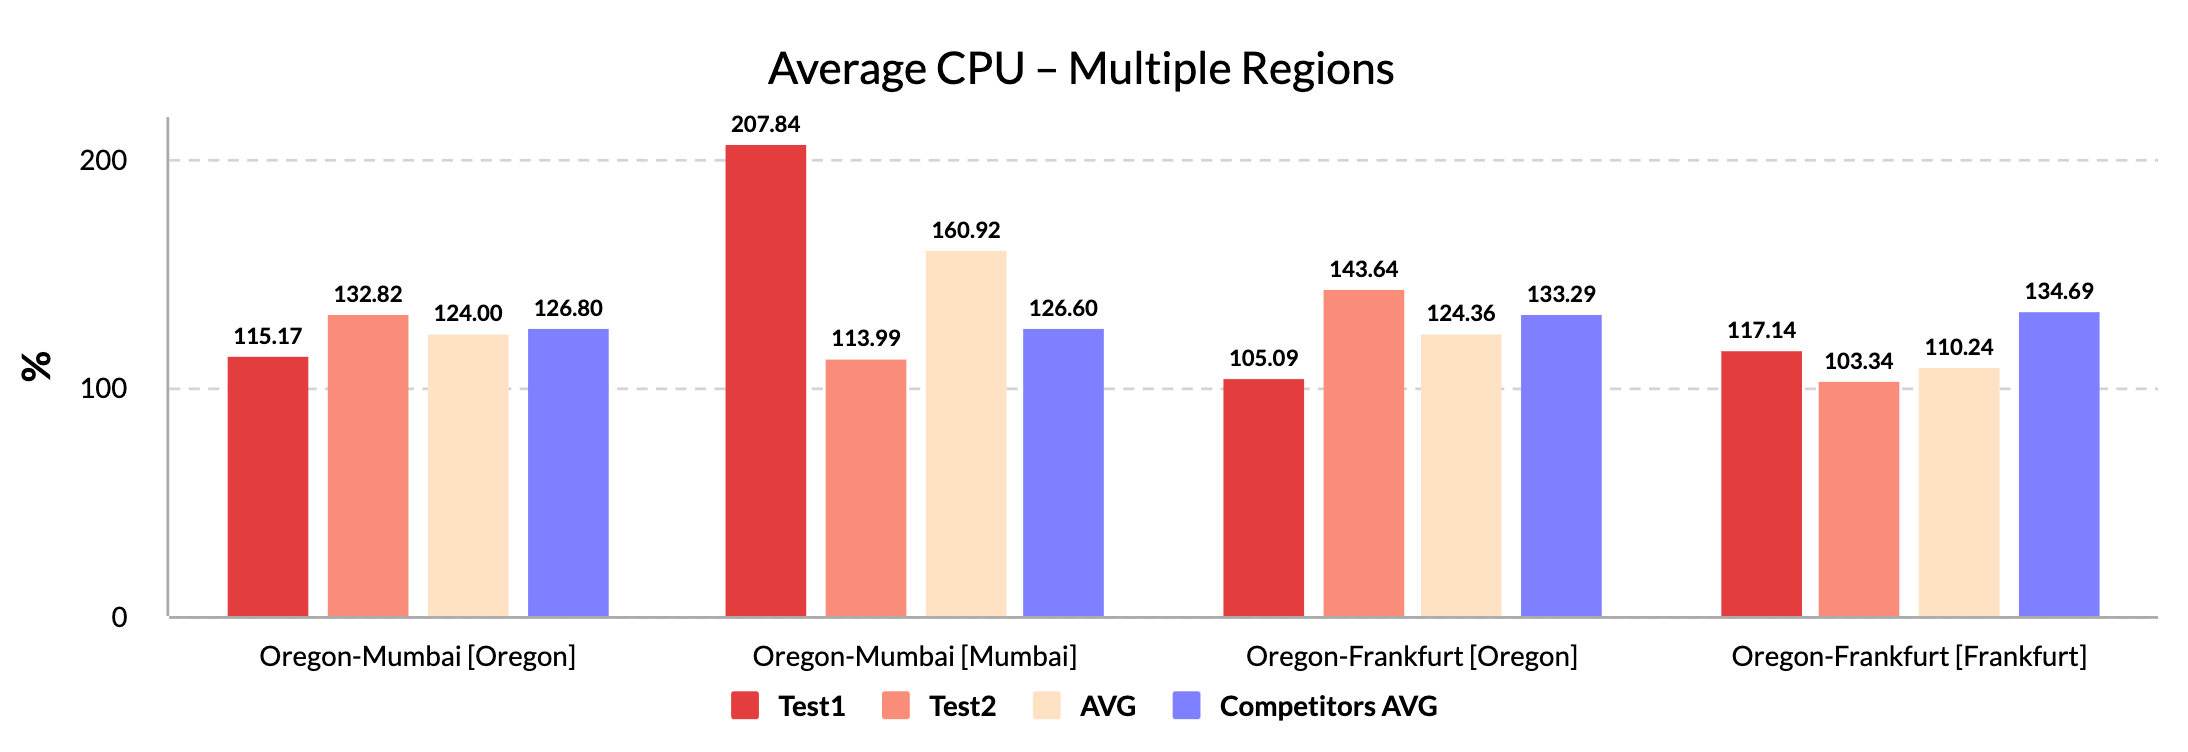 Average CPU - Multiple Regions